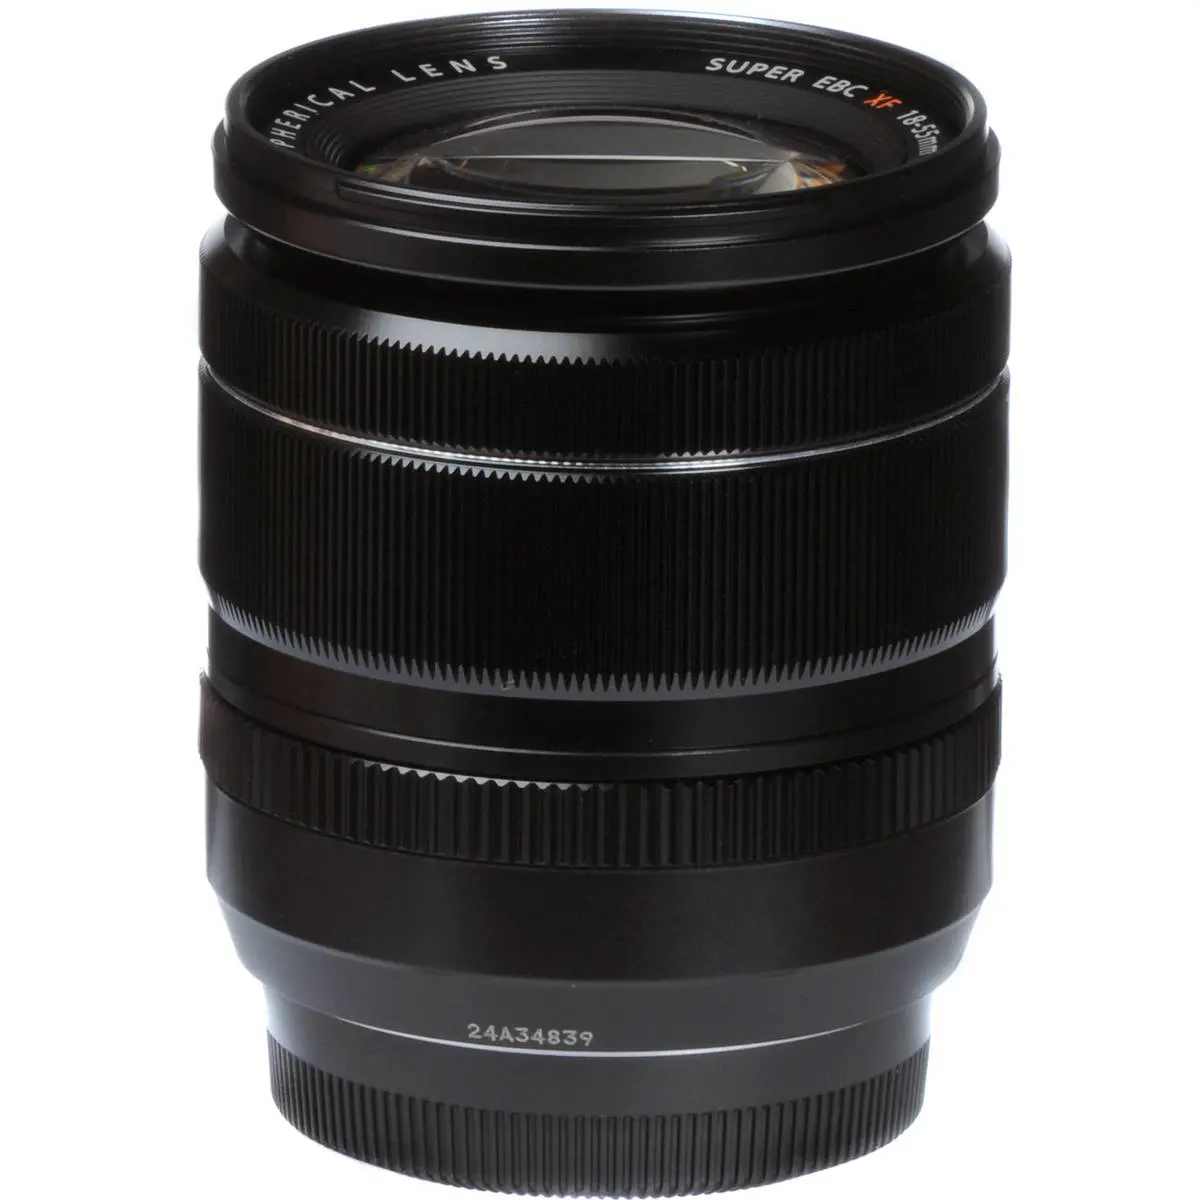 2. Fujifilm FUJINON XF 18-55mm F2.8-4 R LM OIS Lens